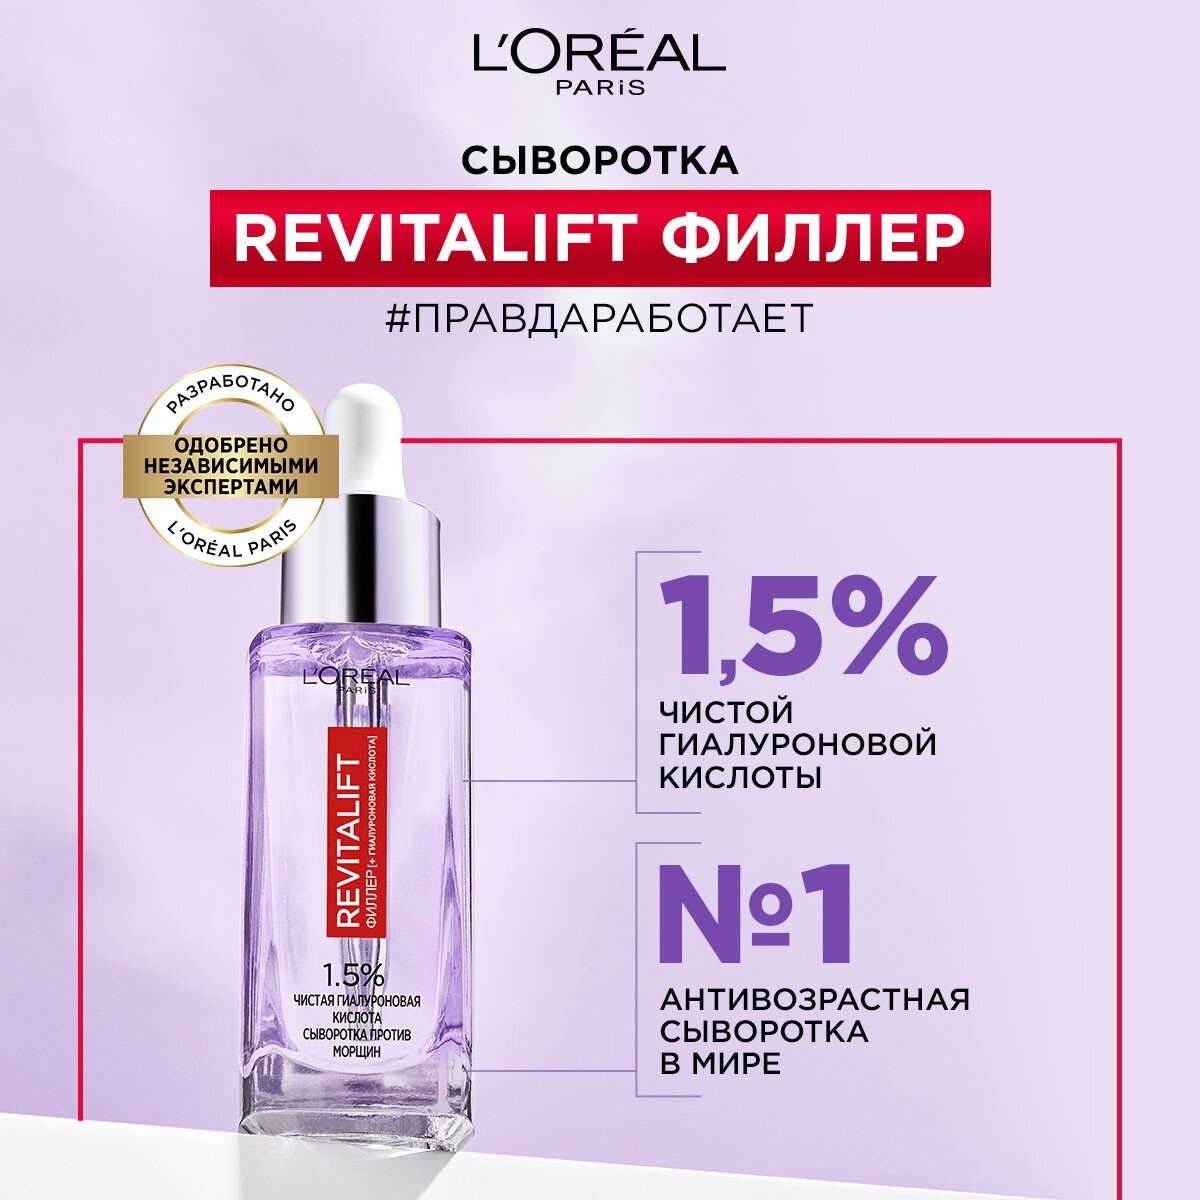 L'Oreal Paris Сыворотка Revitalift филлер для лица и шеи с 1,5% чистой гиалуроновой кислотой, 30 мл